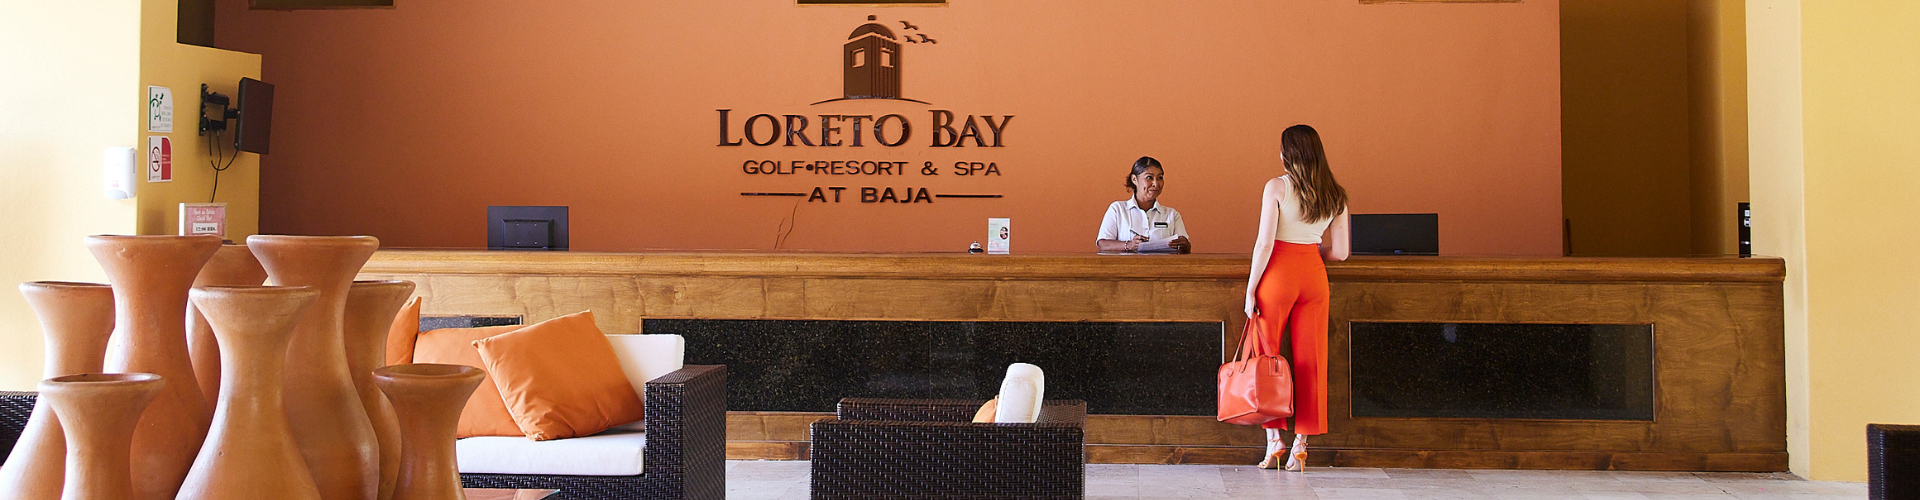 Loreto Bay B.C.S - Loreto, Baja California Sur - 